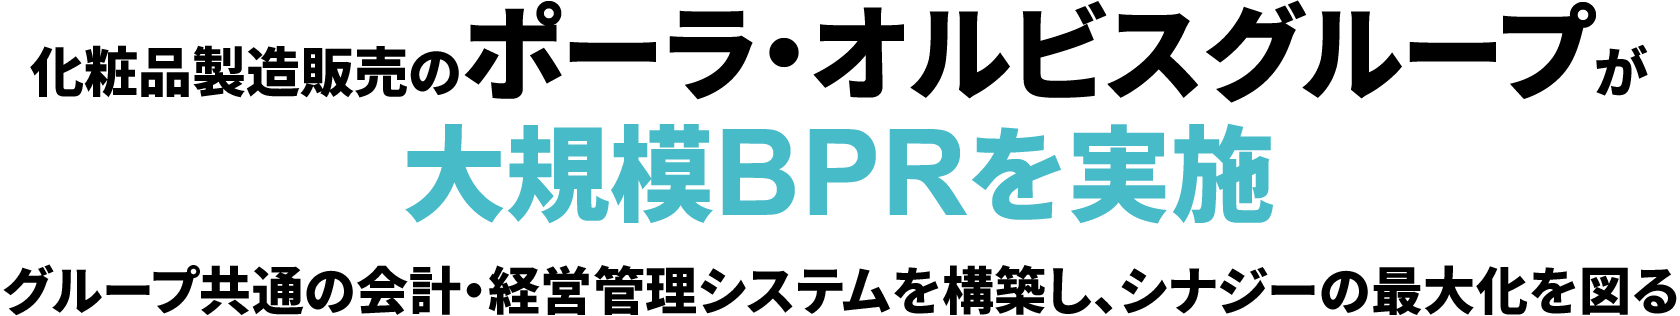 化粧品製造販売のポーラ・オルビスグループが大規模BPRを実施 グループ共通の会計・経営管理システムを構築し、シナジーの最大化を図る